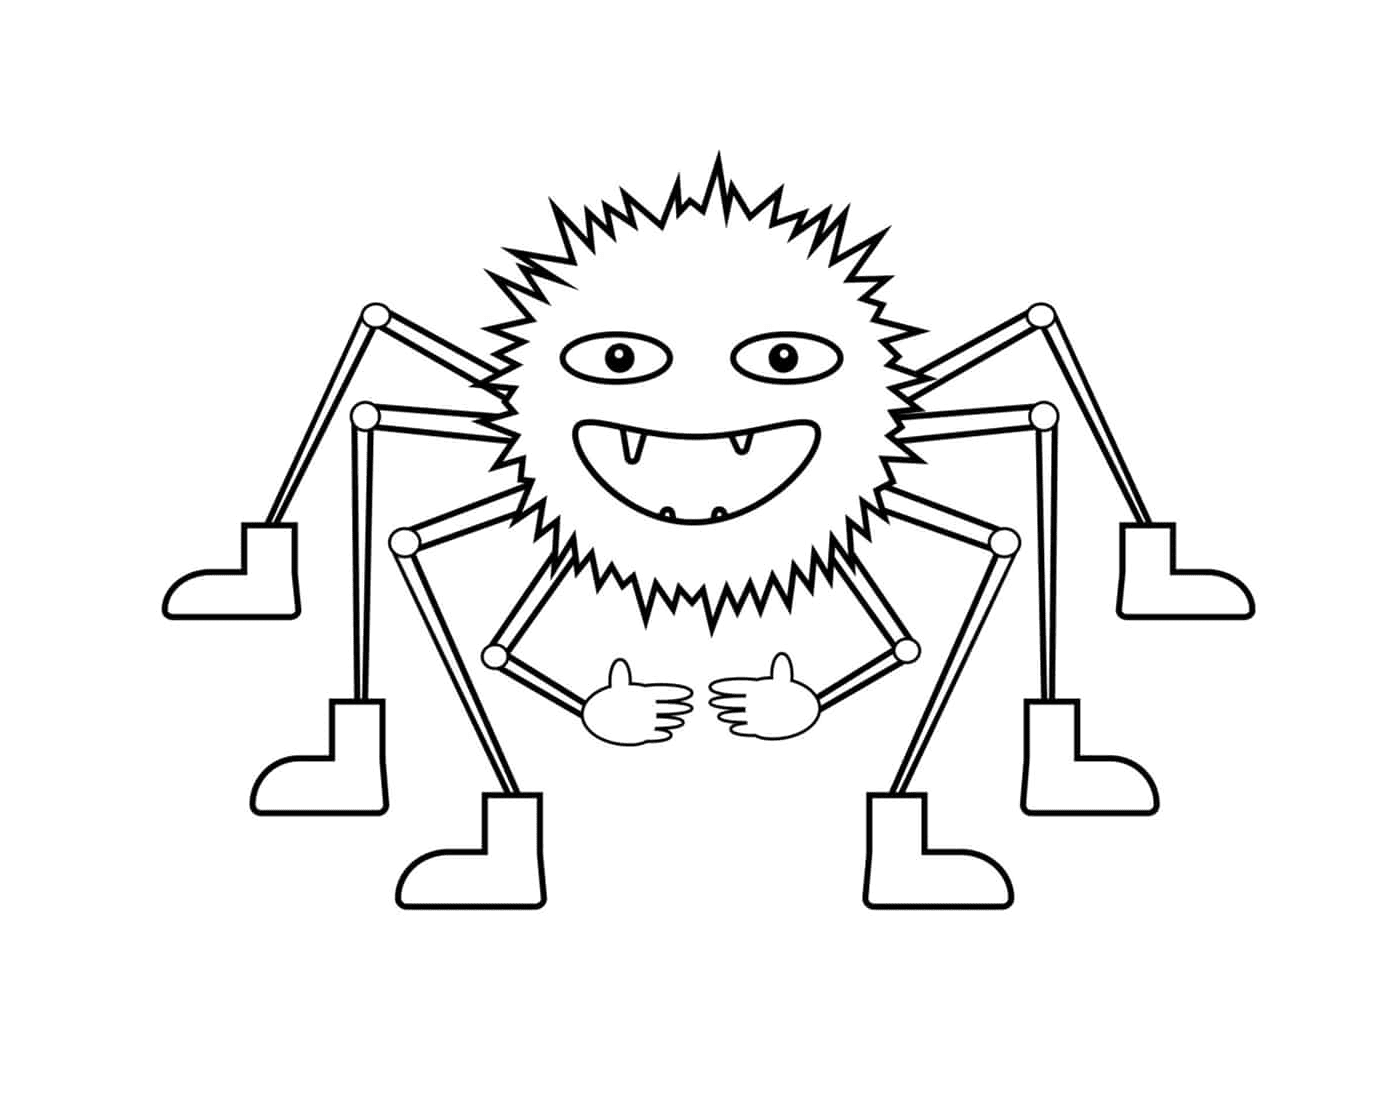  Eine Spinne mit mehreren Beinen 